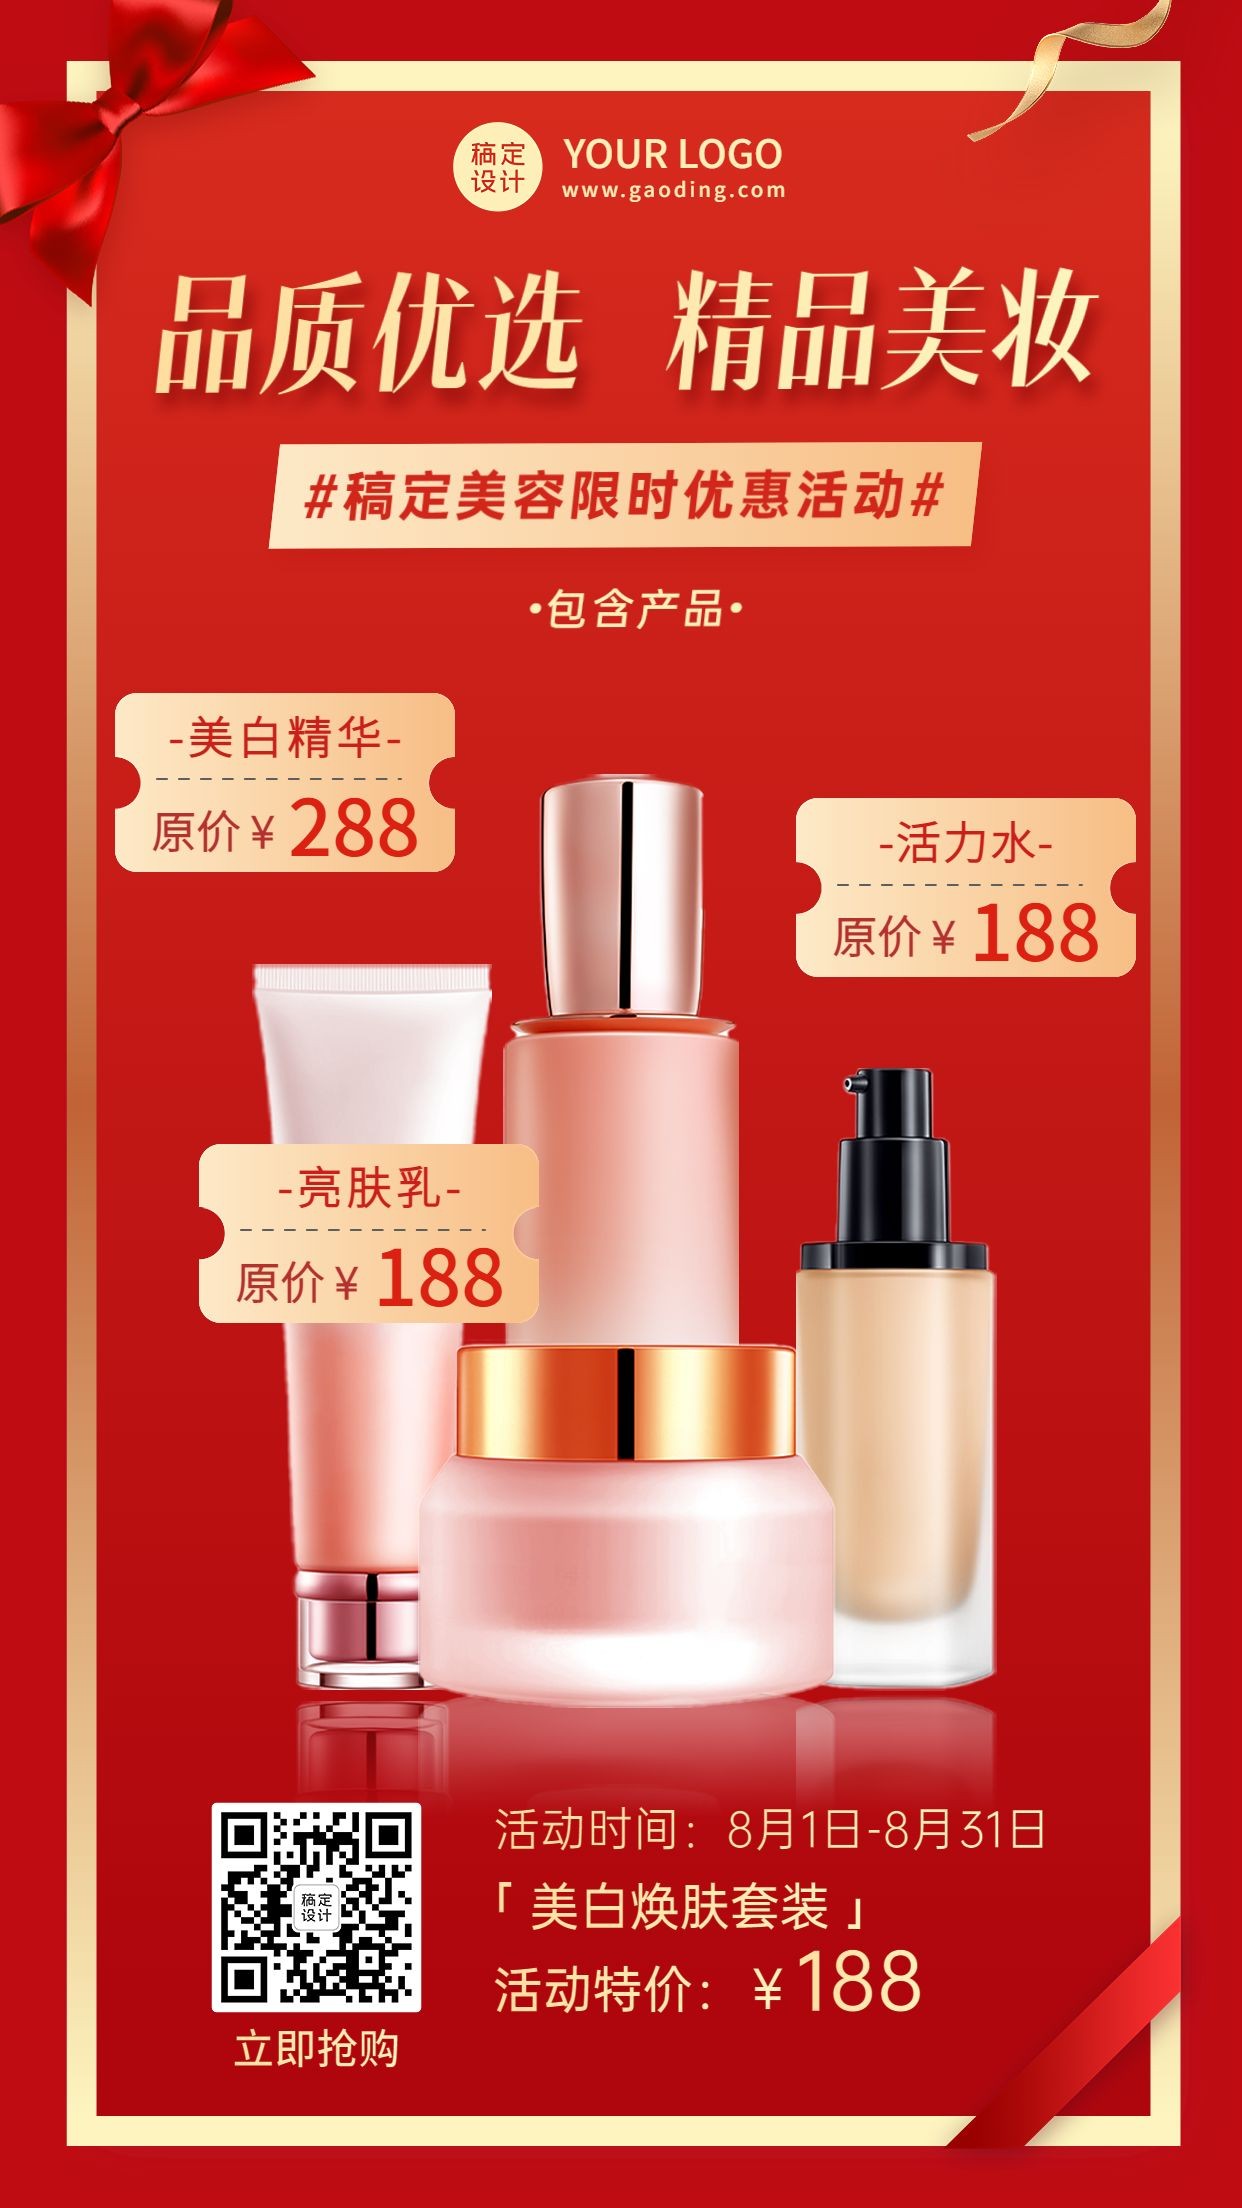 微商美容美妆产品限时优惠活动营销展示手机海报预览效果